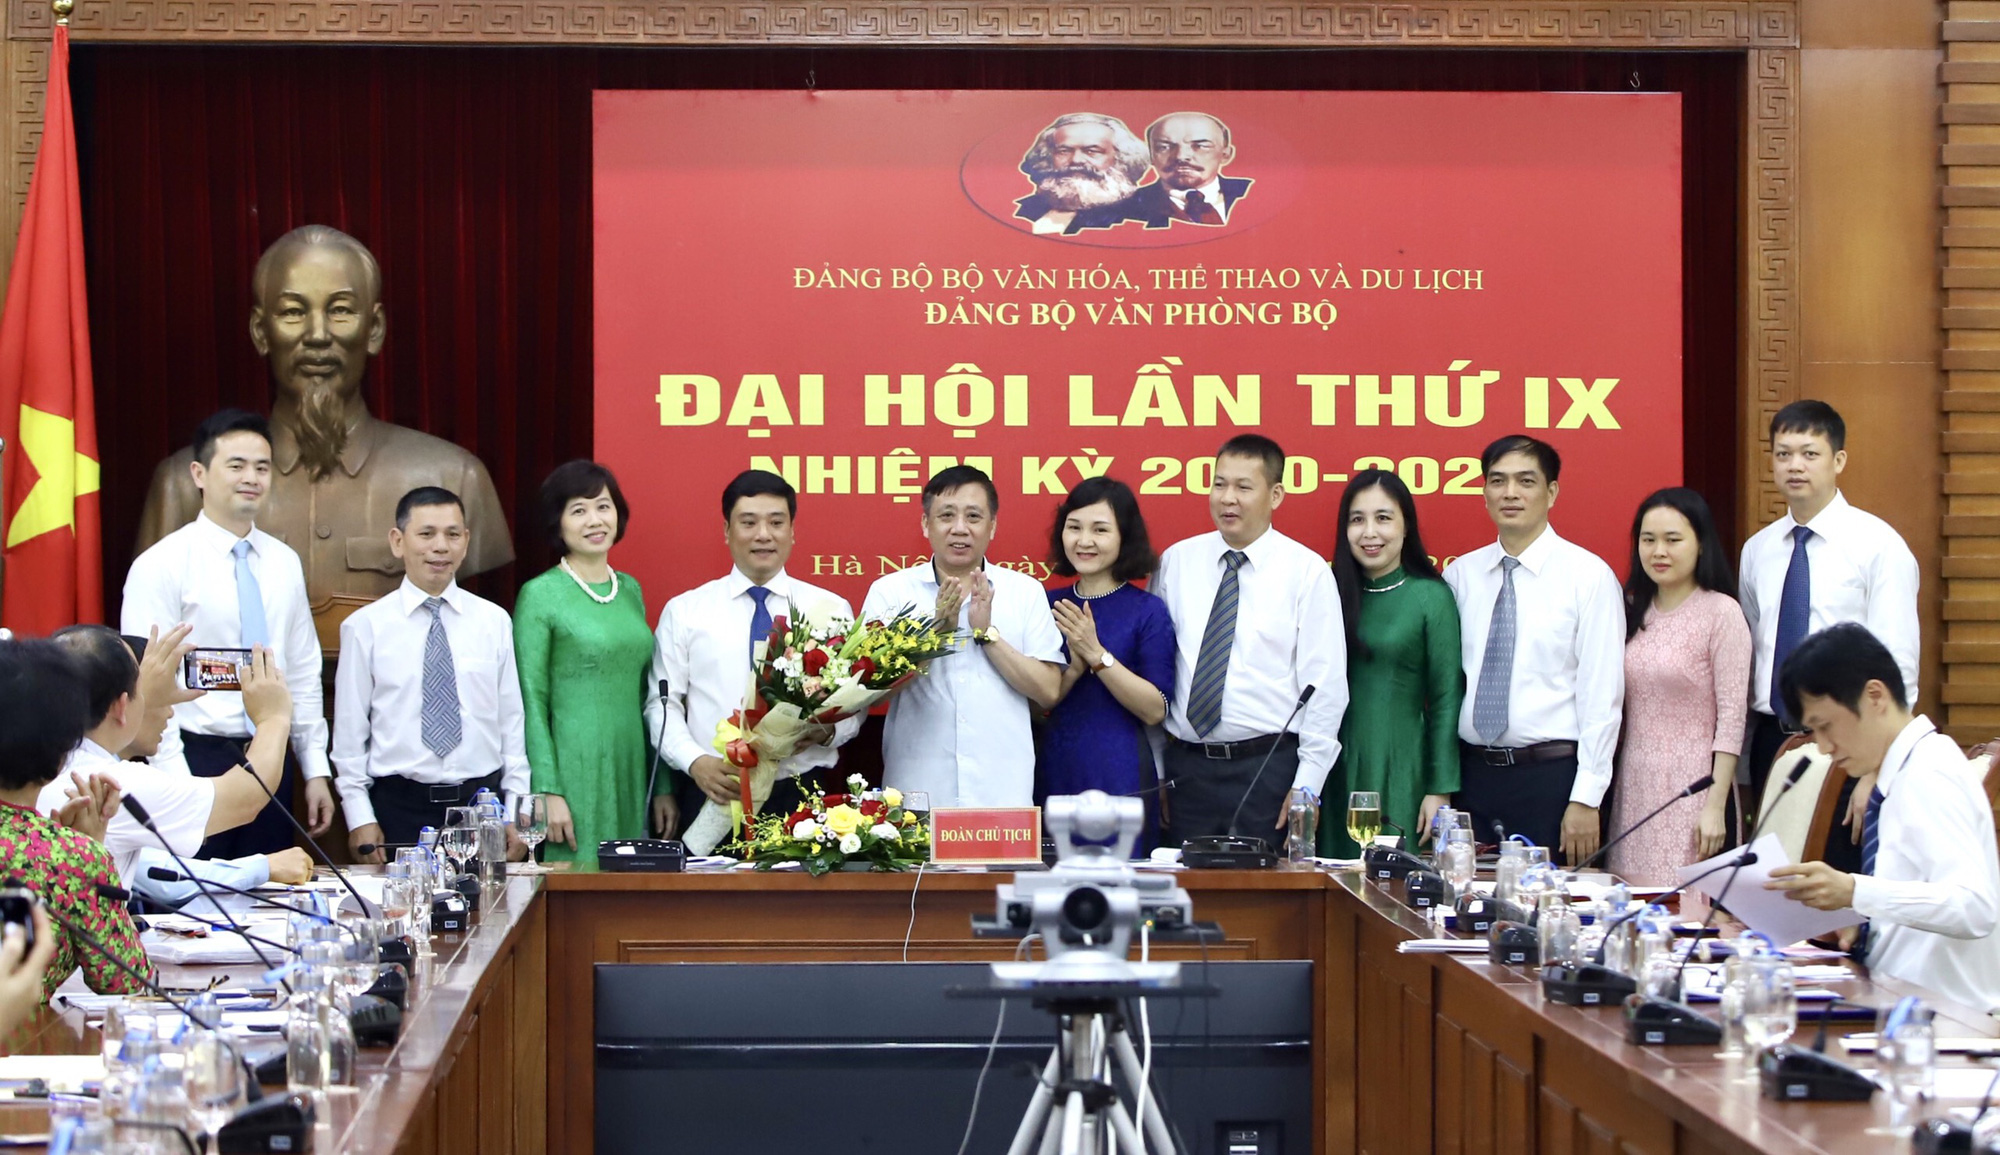  Ông Nguyễn Thái Bình tái đắc cử Bí thư Đảng ủy Văn phòng Bộ VHTTDL - Ảnh 5.